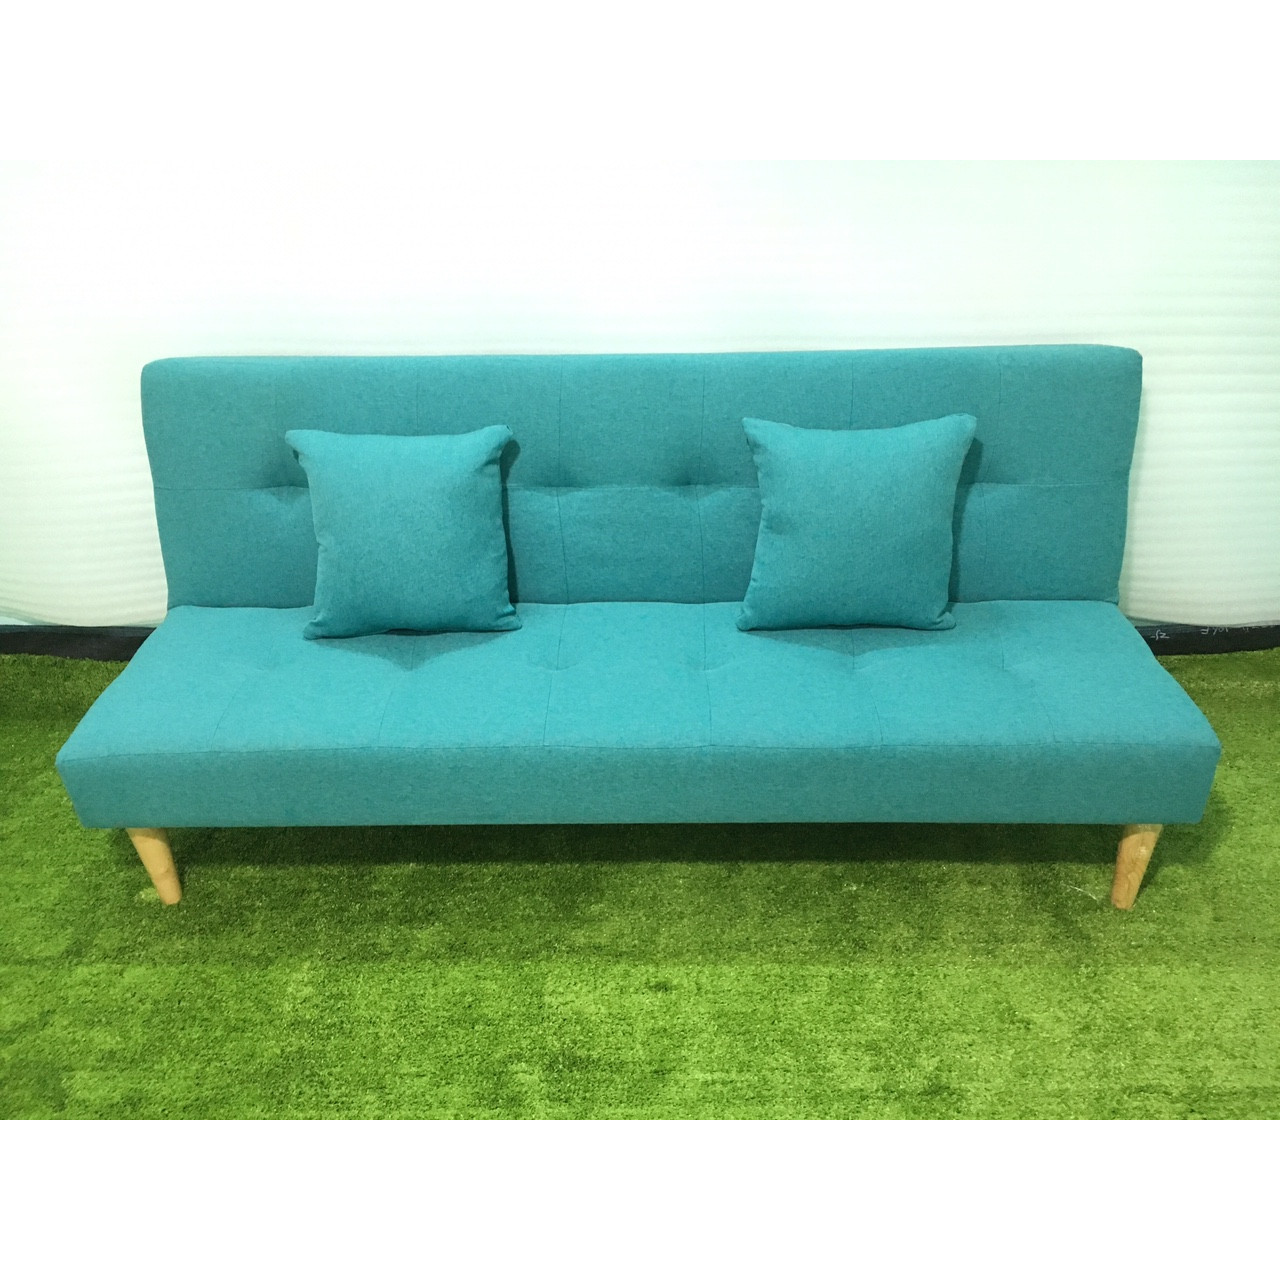 Sofa bed xanh ngọc bố XNB 1m7x90, sofa giường phòng khách, salon, sopha, sa lông, sô pha